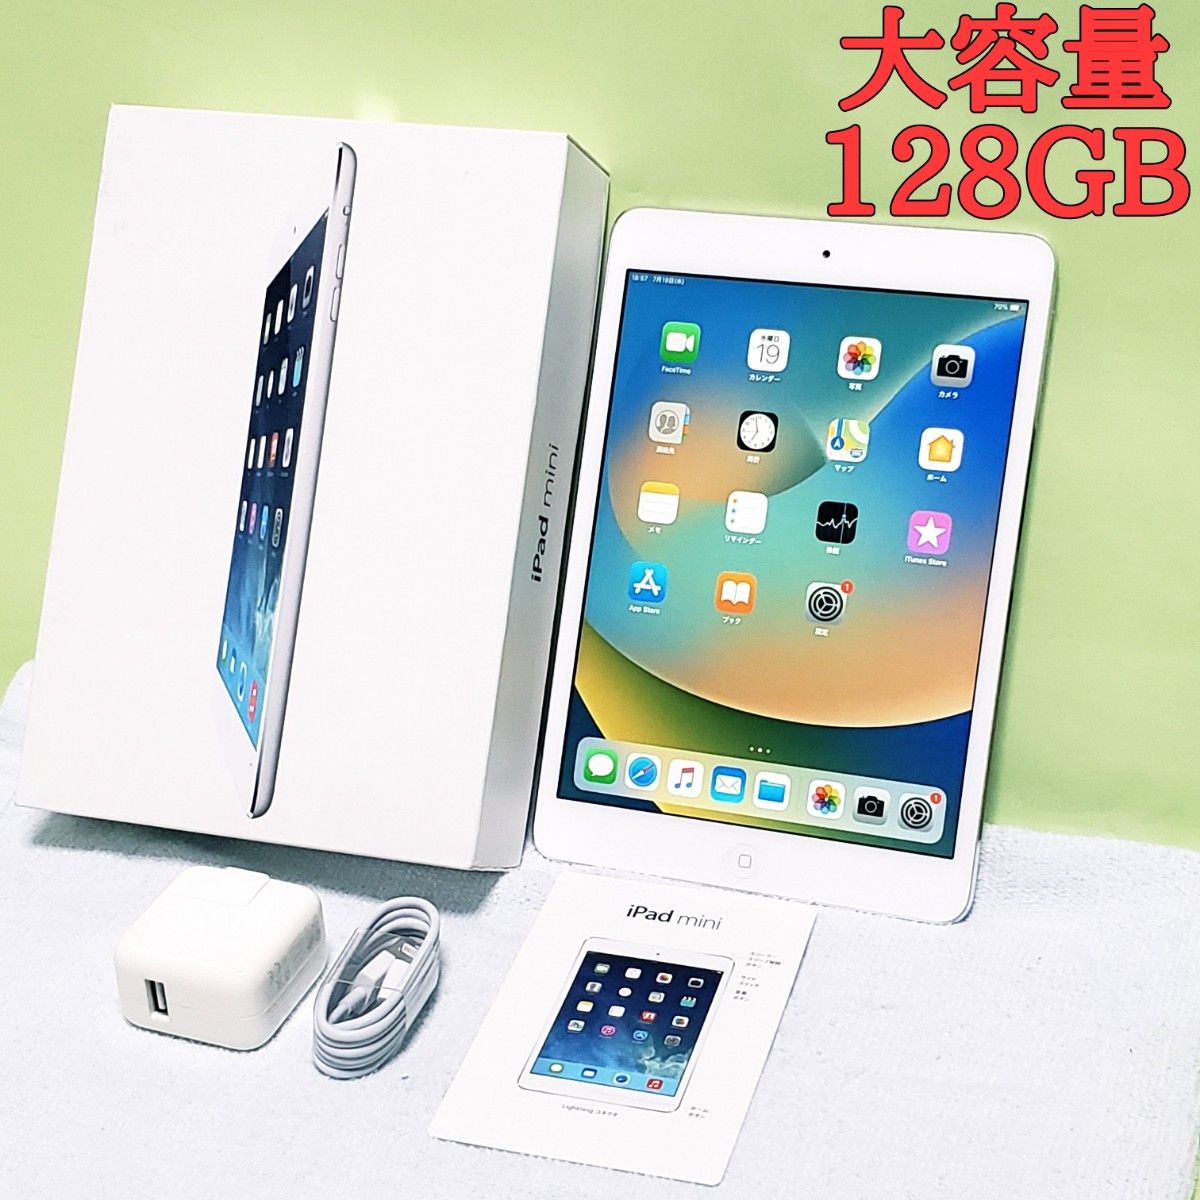 ☆箱・充電器付き☆128GB☆Apple iPad mini 2 7.9インチ-